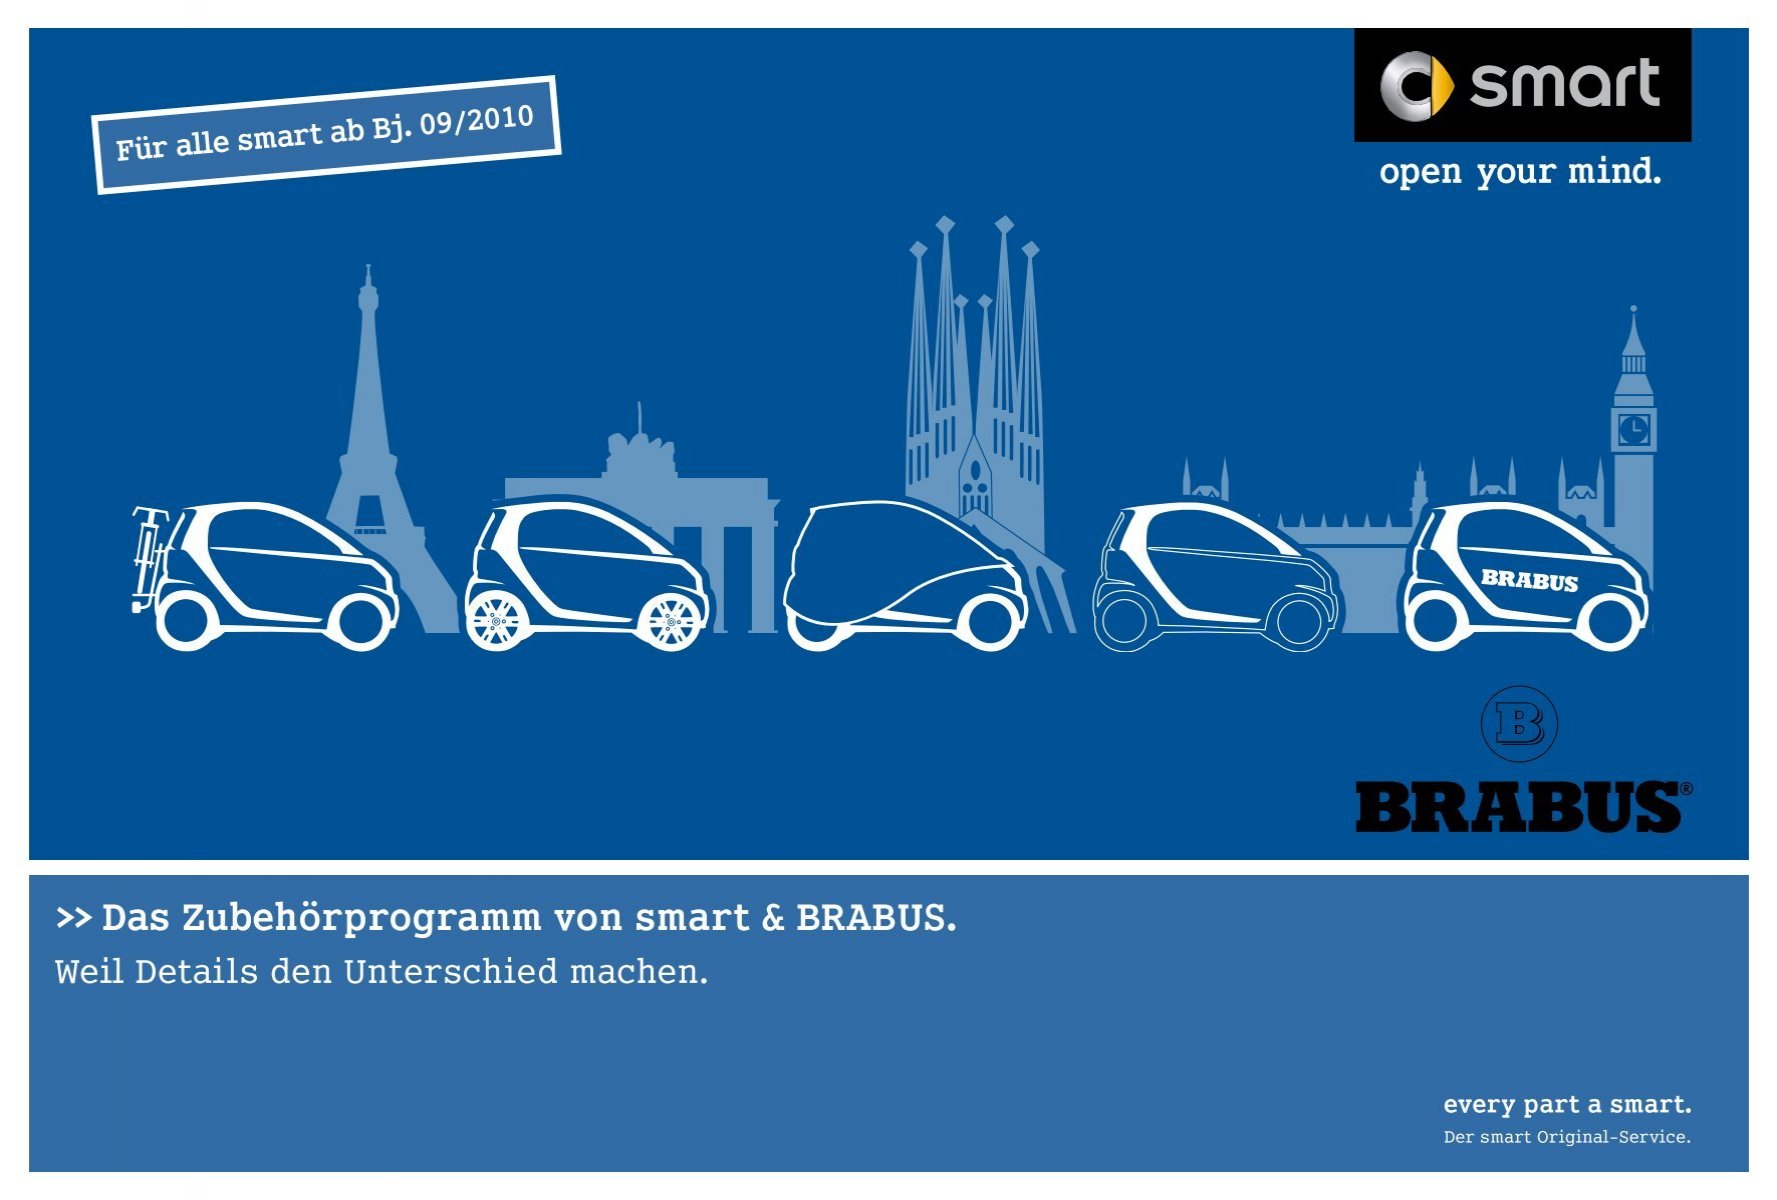 Das Zubehörprogramm von smart & BRABUS. - smart Rhein Ruhr